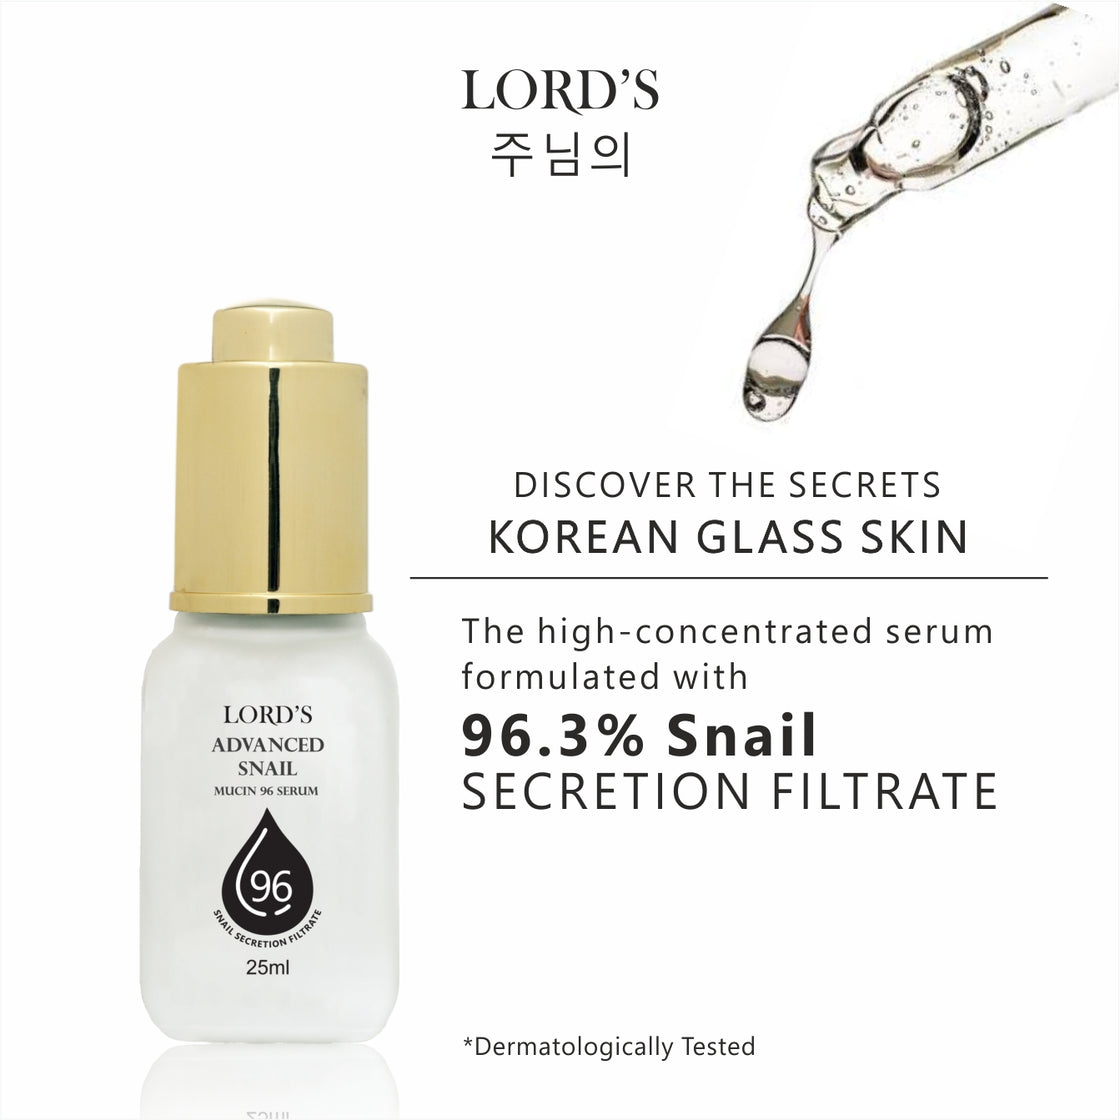 Lord's Korean Glass Skin Anti Aging Kit